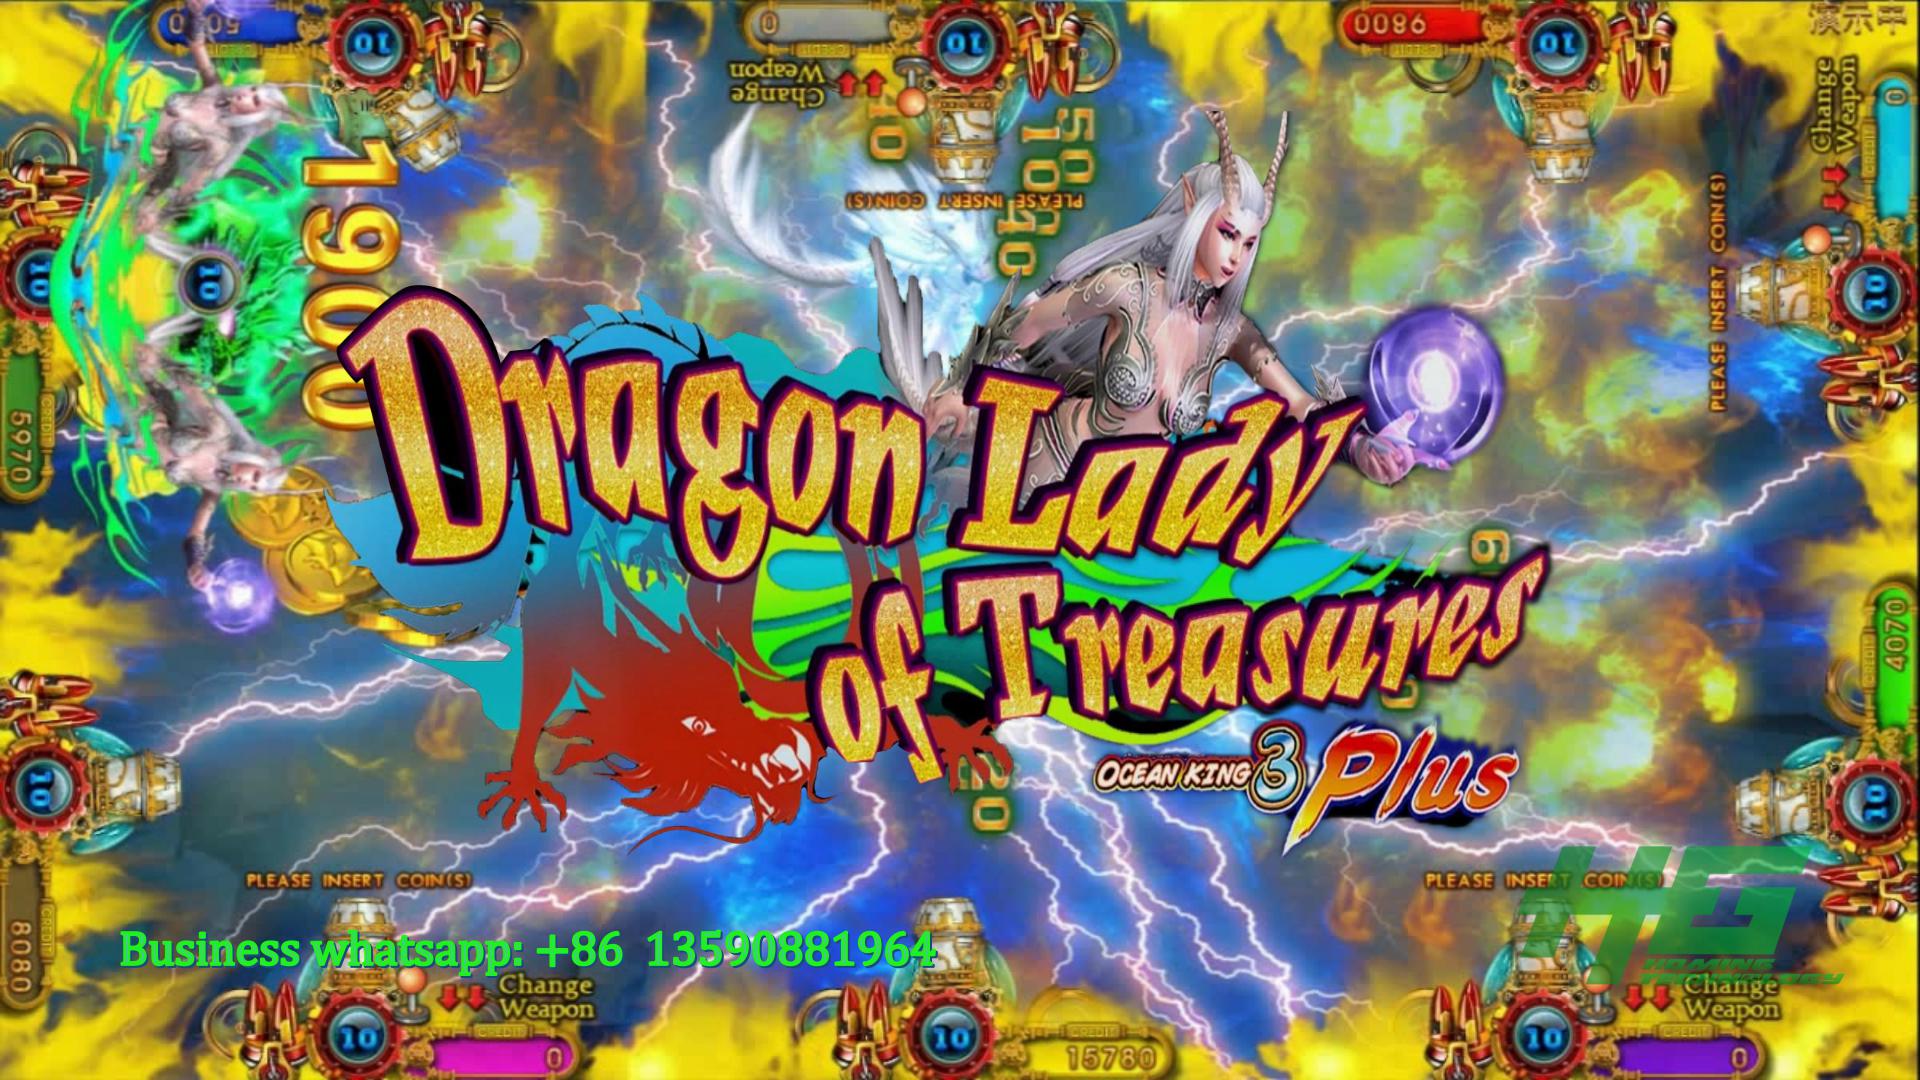 IGS Original Ocean King 3 Plus Dragon Lady of Treasures,Ocean King 3 Plus Fish Gambling Game Machine For Sale